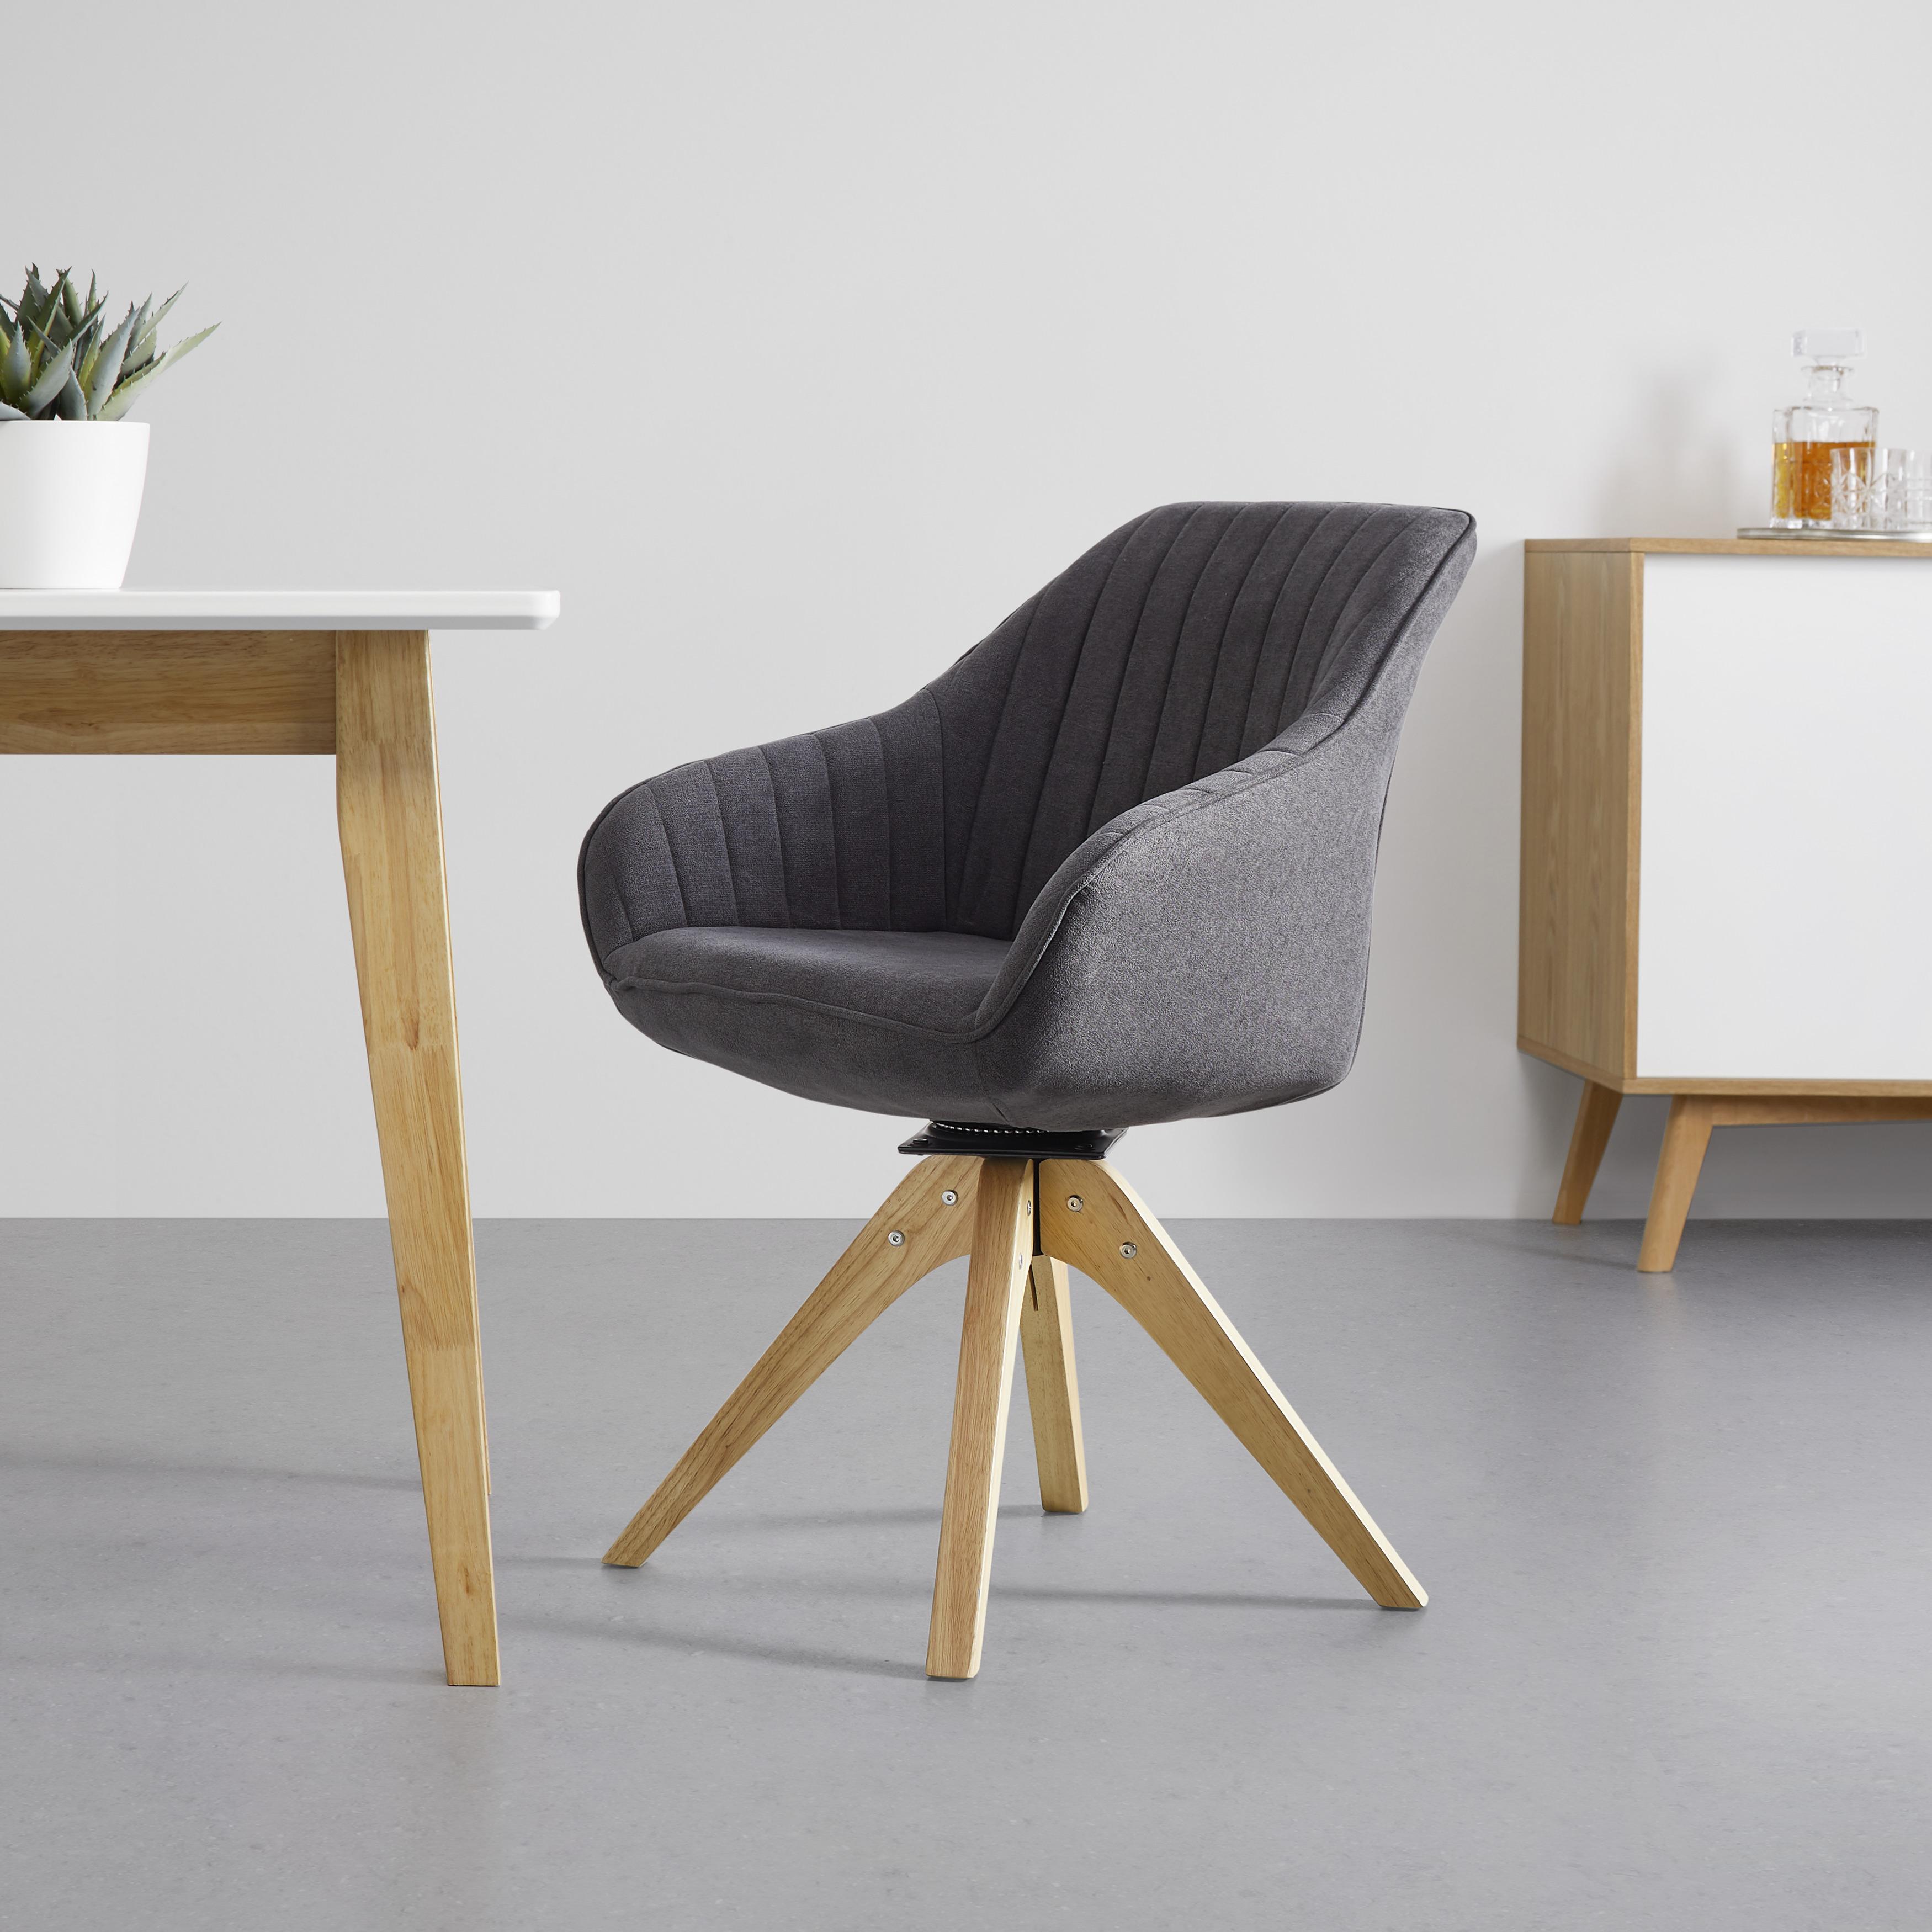 Jídelní Židle Leonie - šedá/barvy dubu, Moderní, dřevo/textil (60/84/61cm) - Modern Living